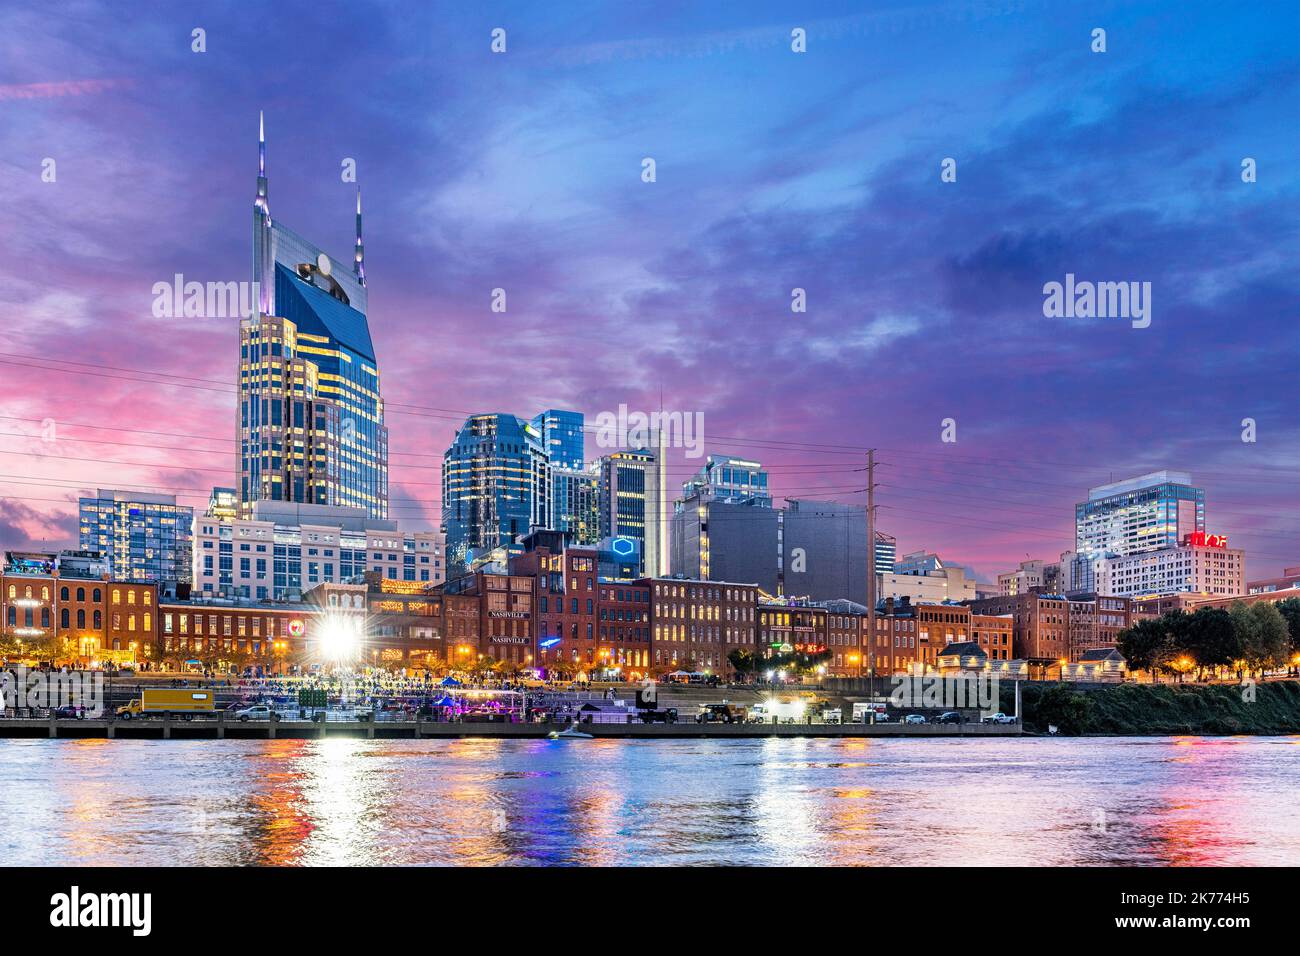 Il bellissimo mago del famoso centro di Nashville lungo il fiume mostra una vibrante attrazione turistica sul lungomare di notte. Foto Stock